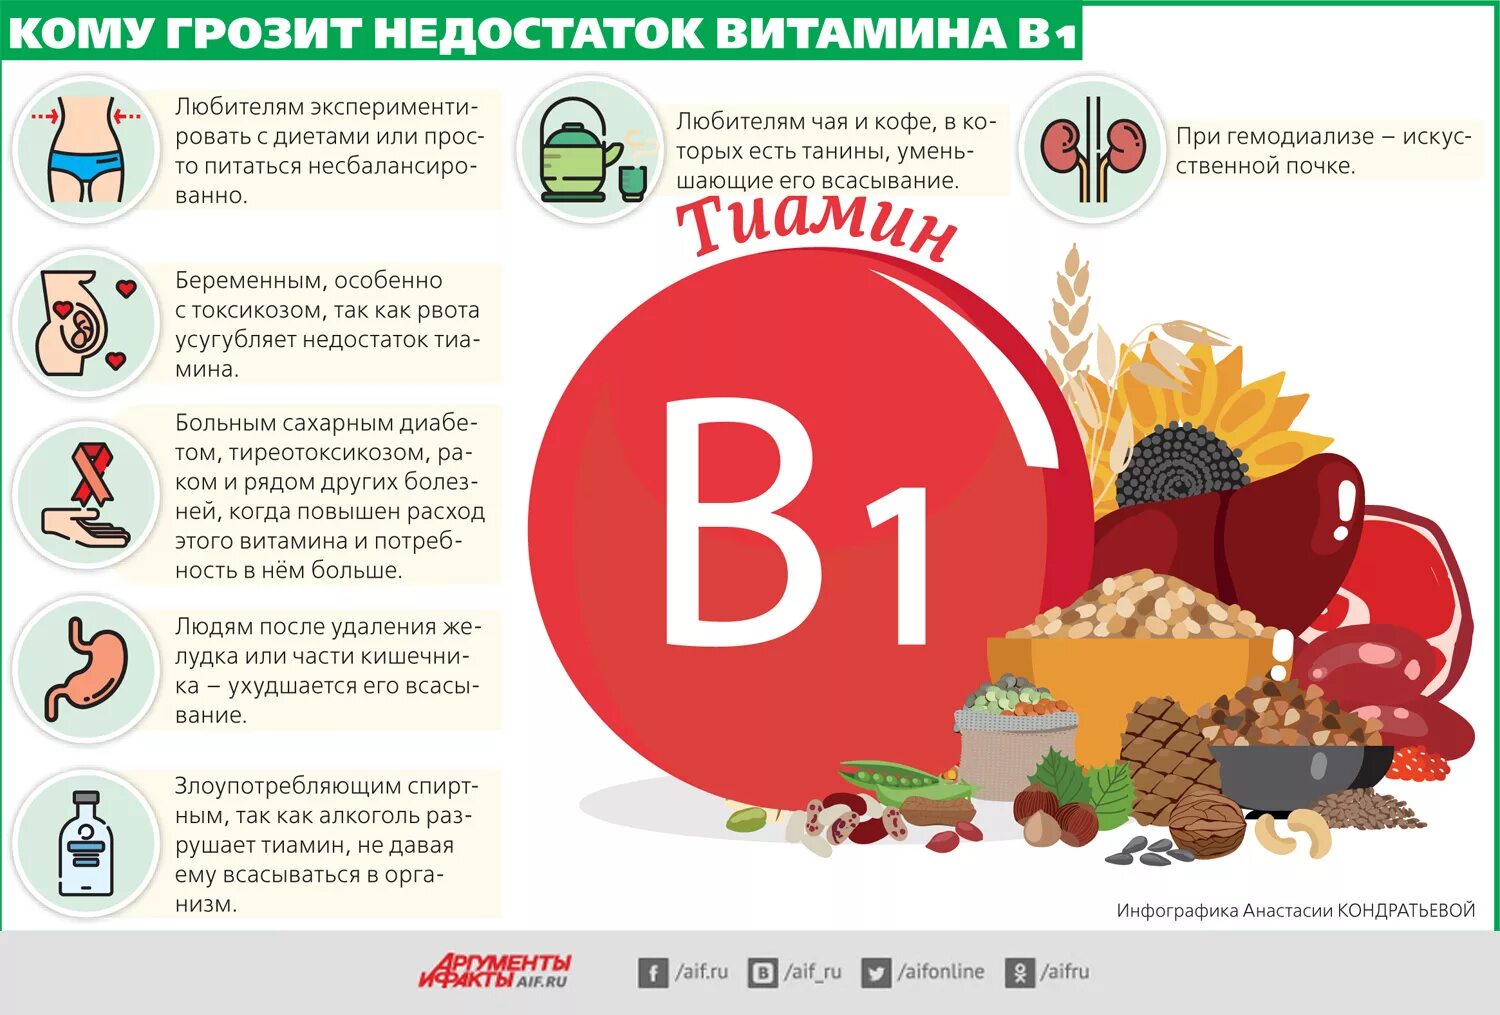 Недостаток б6. Витамин в1 дефицит болезни. Недостаток витамина b1. Симптомы витамина b1. Признаки недостатка витамина b1.